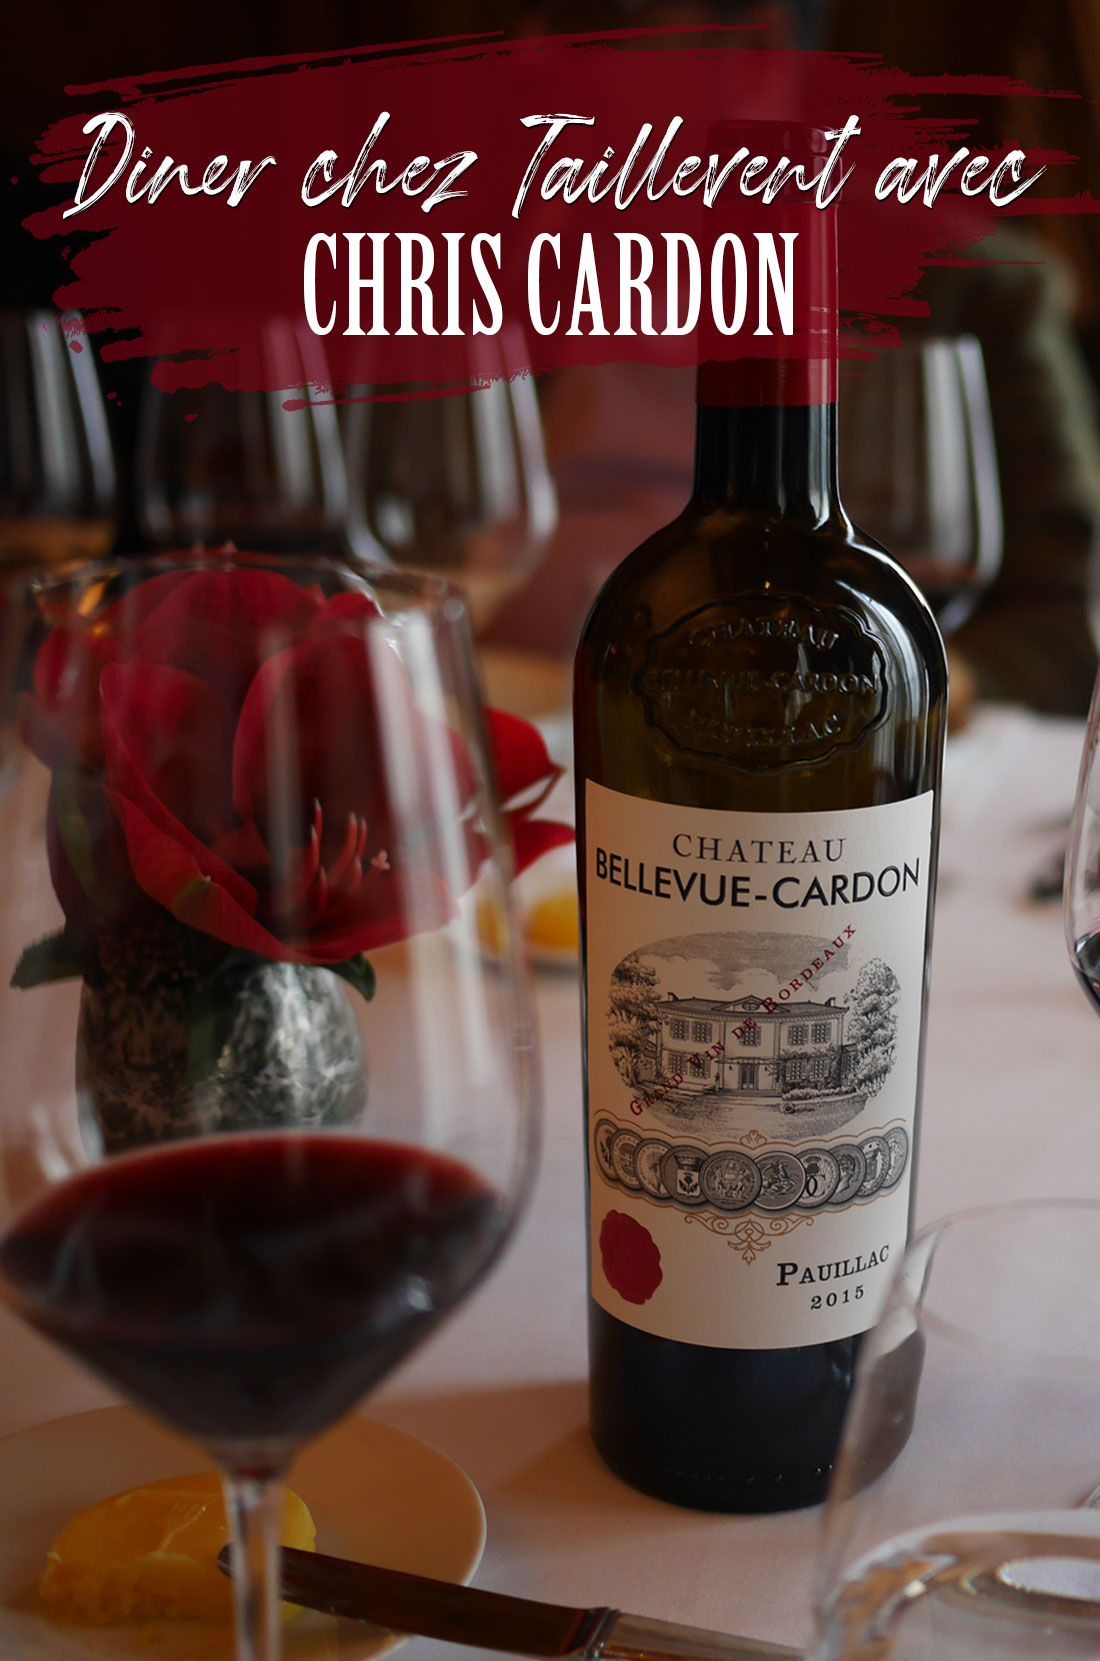 A la découverte des vins de Chris Cardon chez Taillevent